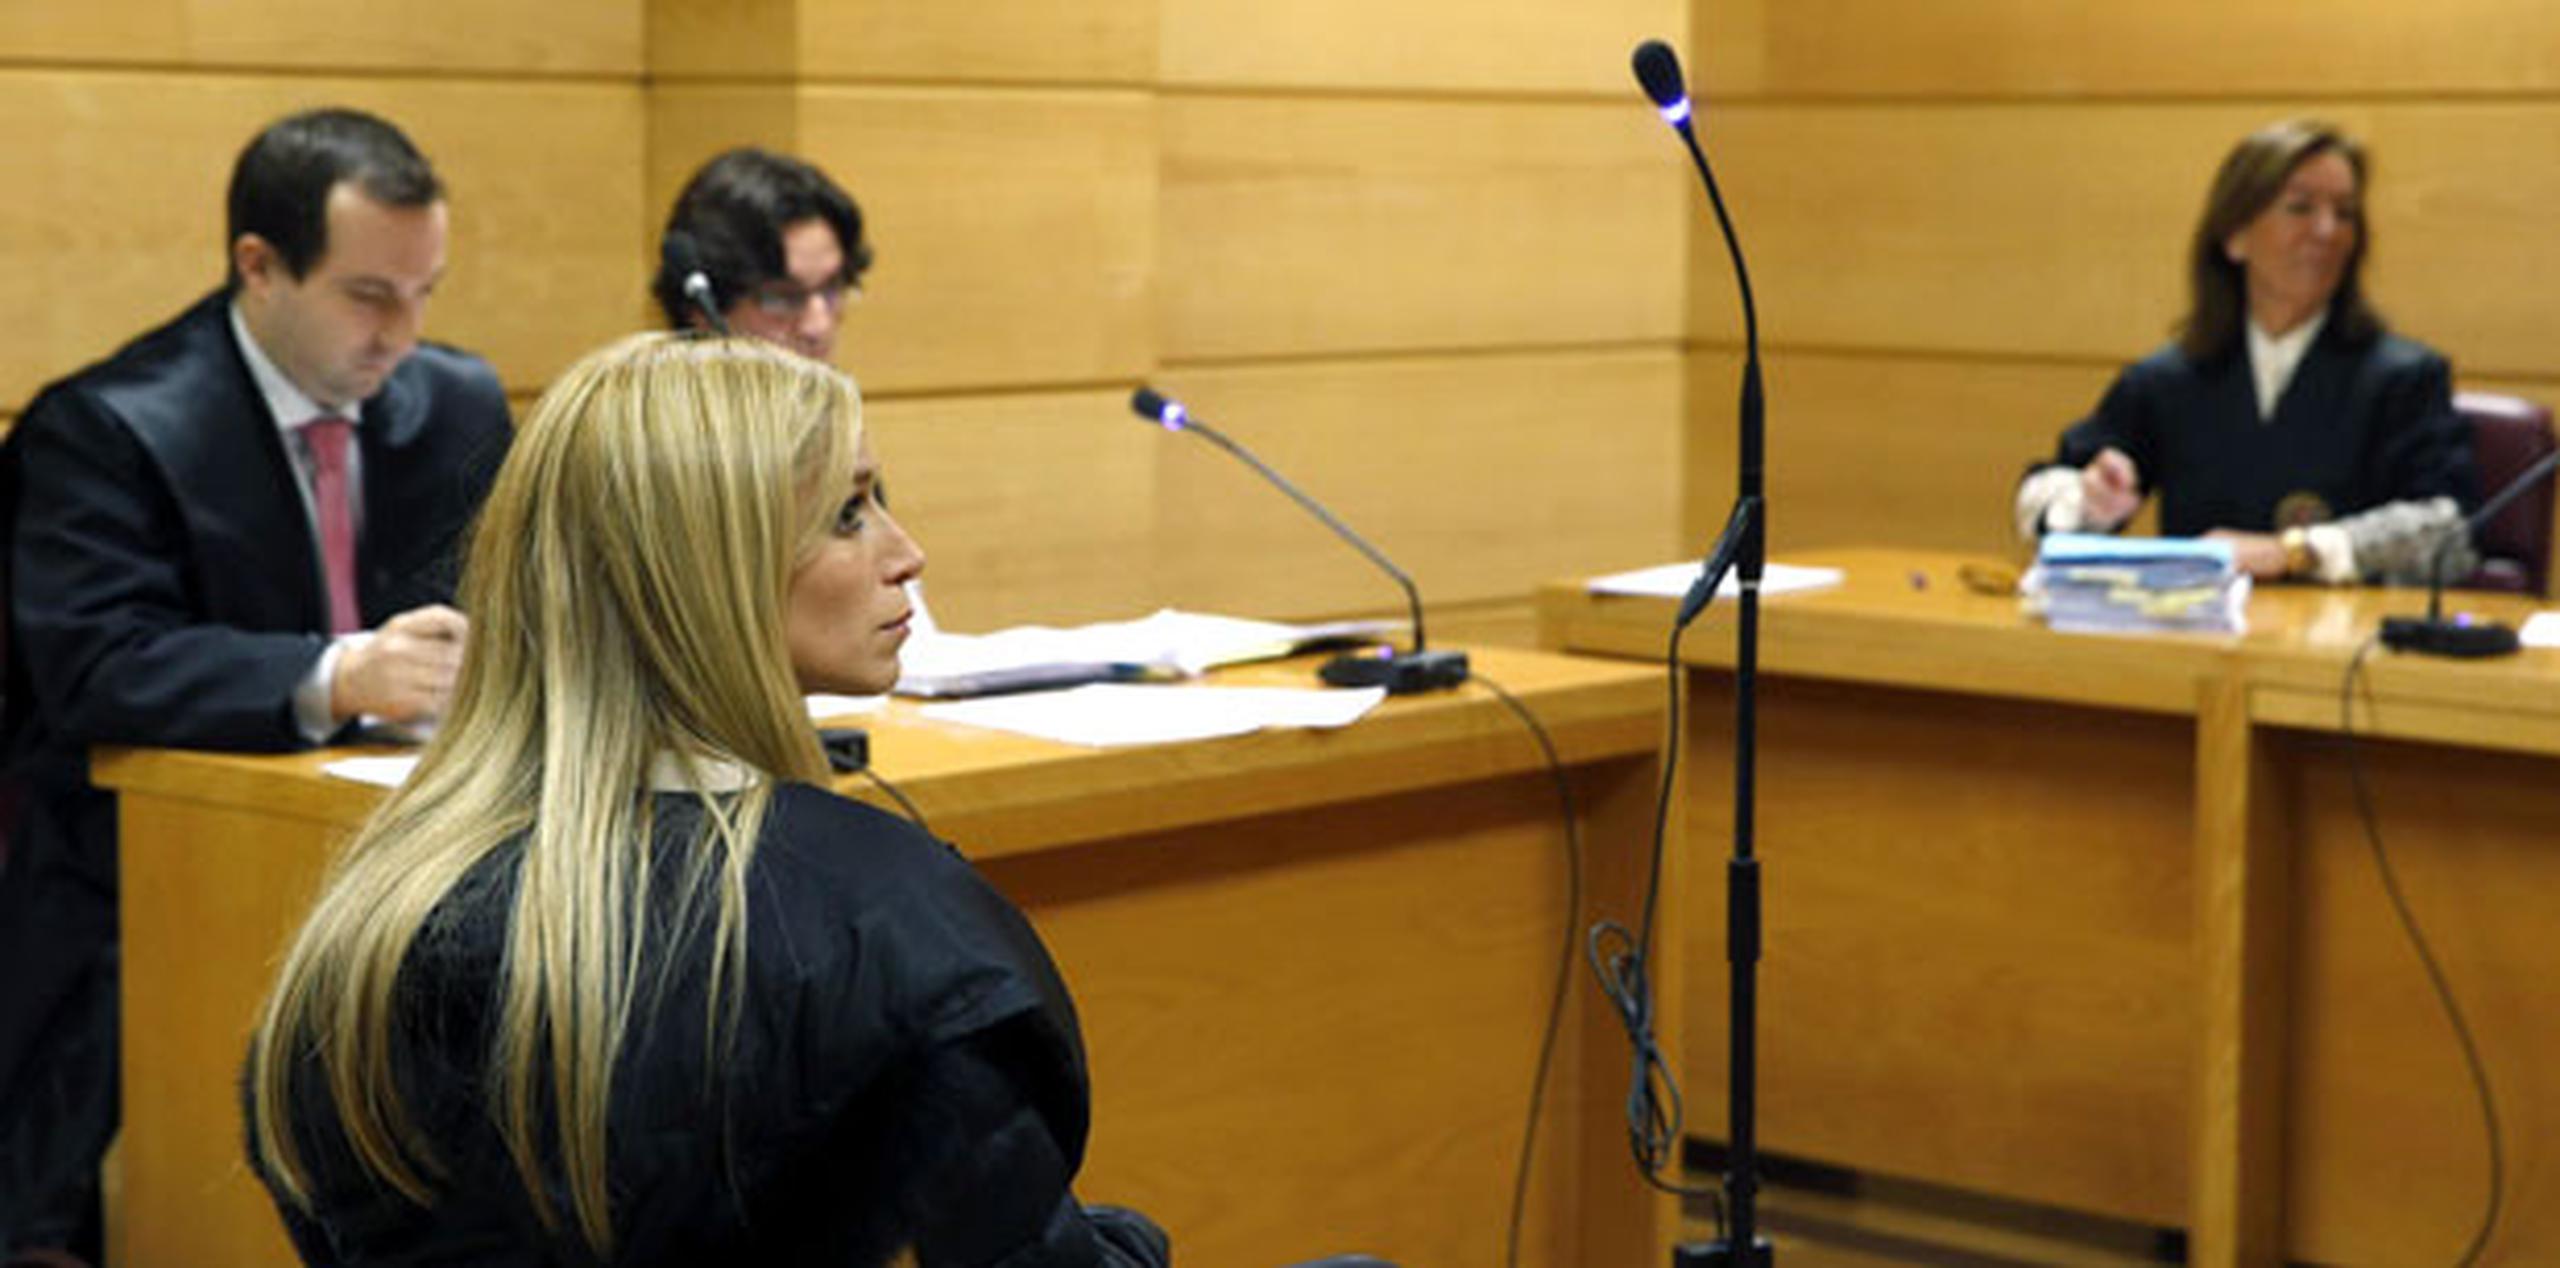 Vázquez compareció hoy a la vista de extradición en España. (AP Photo/Javier Lizon, Pool)